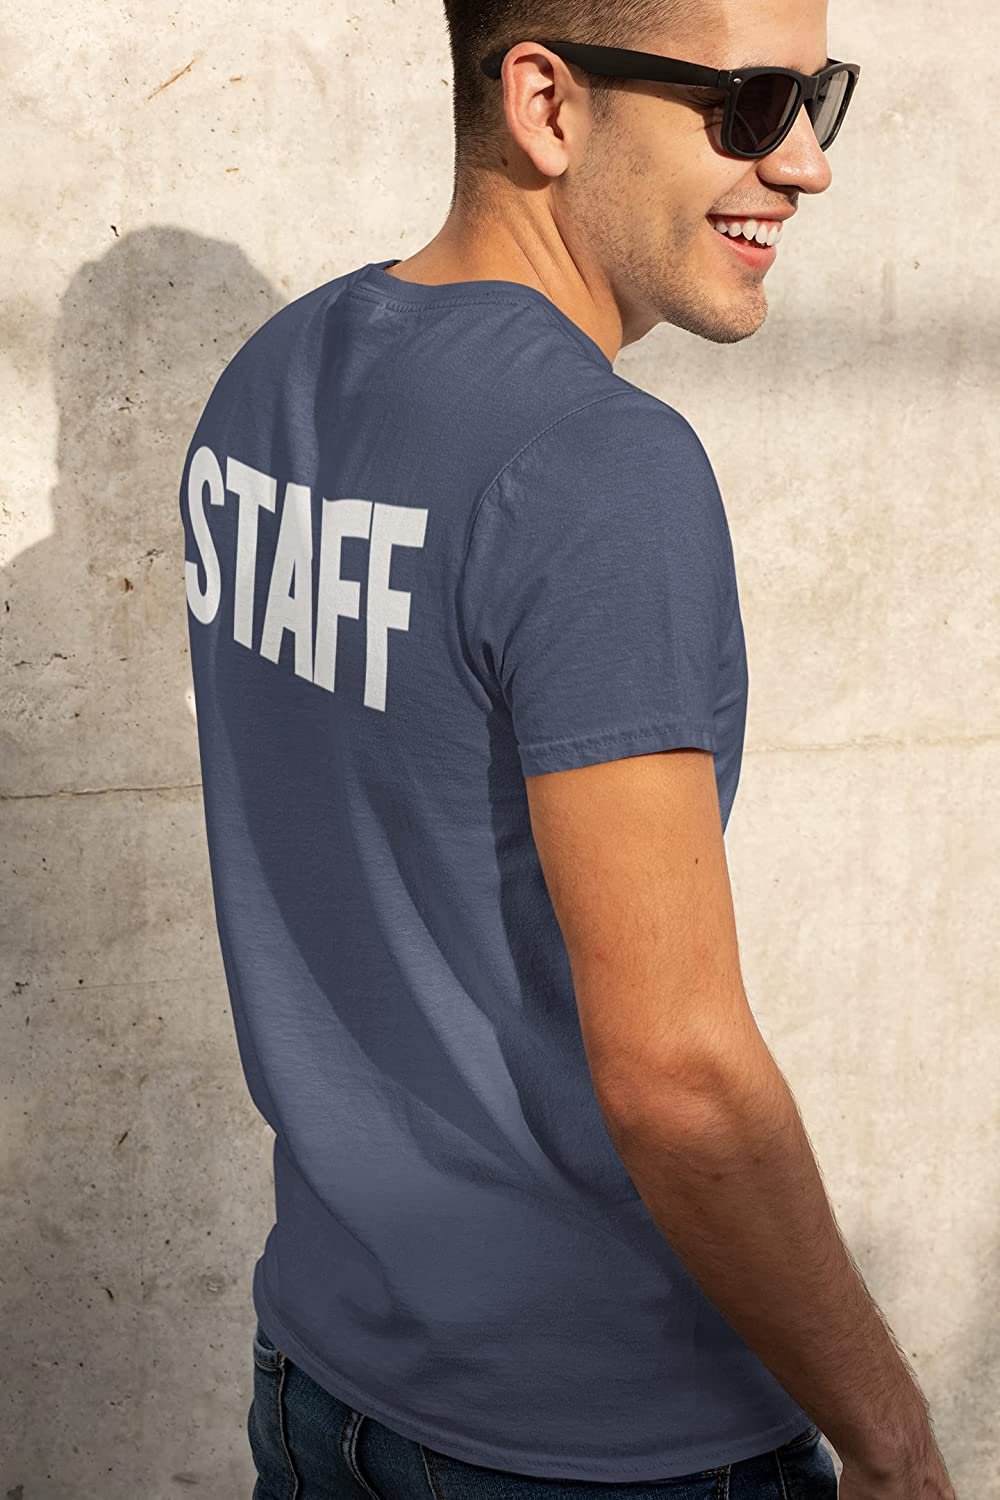 T-shirt sérigraphié Staff pour homme (imprimé poitrine et dos, denim chiné et blanc)